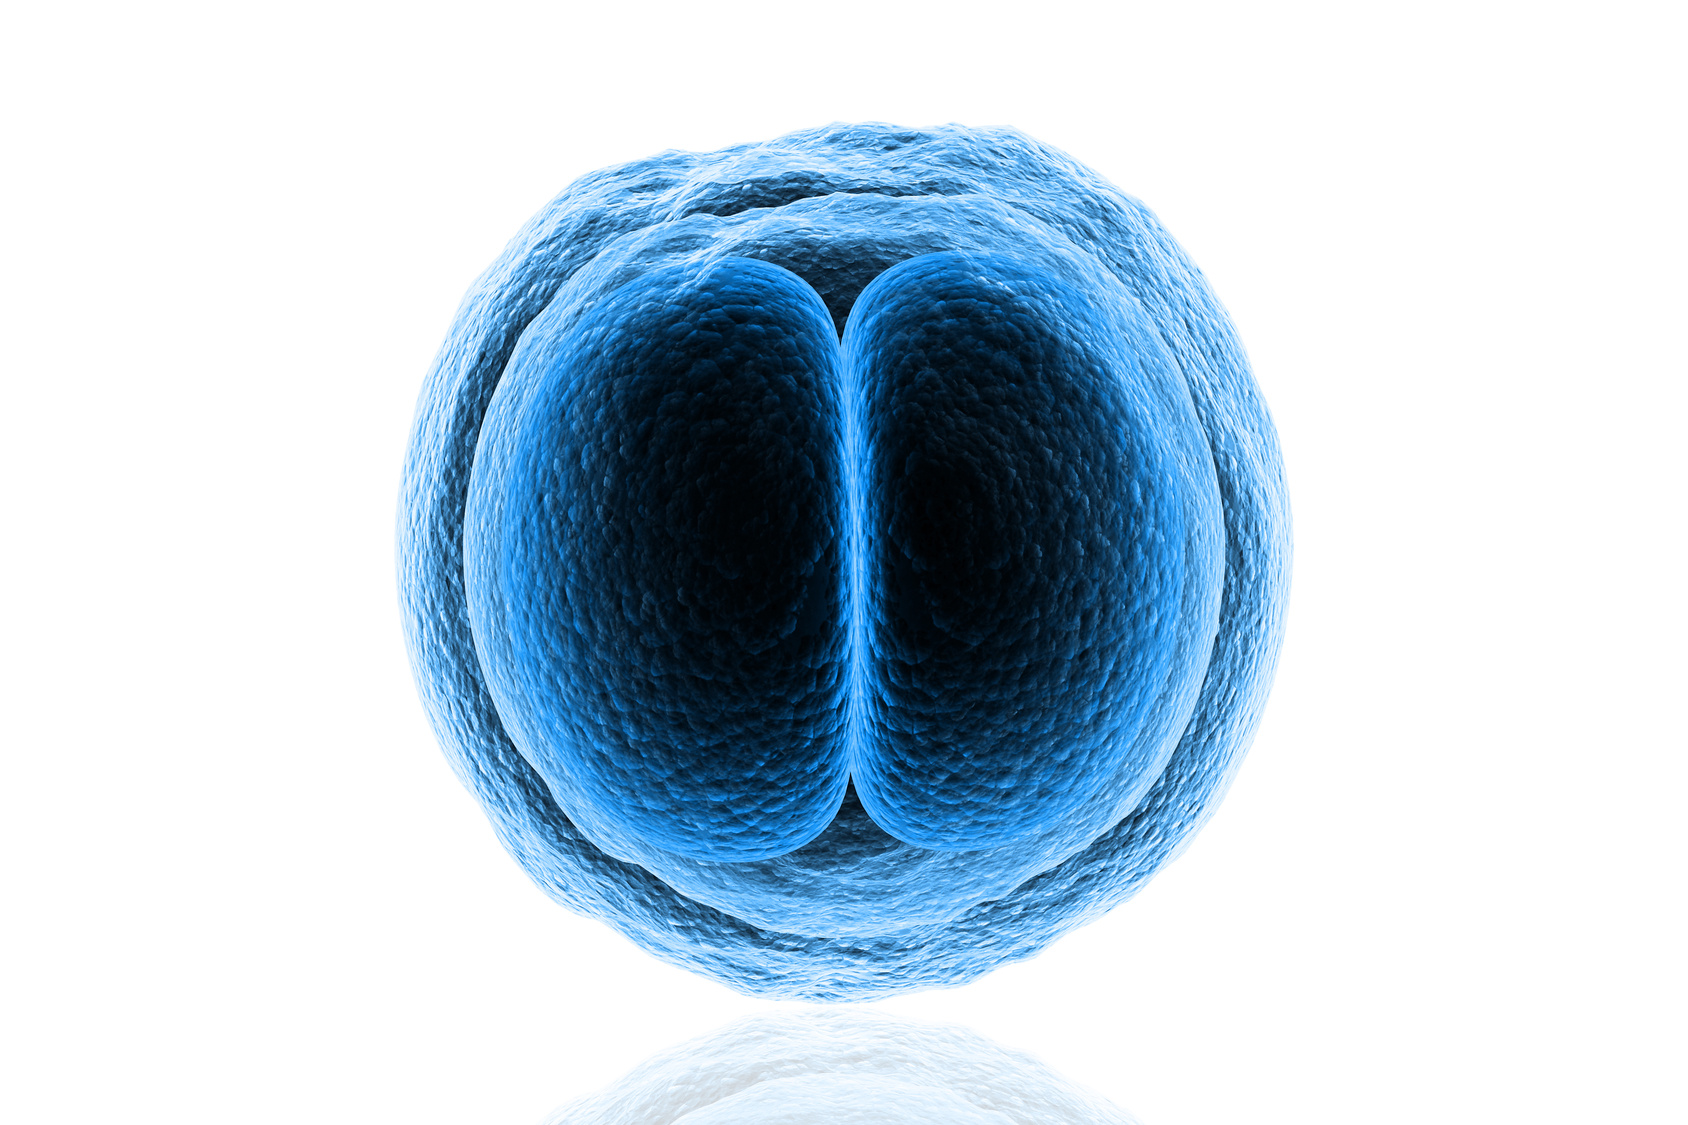 6 datos sobre implantación embrionaria que cualquier pareja que busca embarazo debería conocer